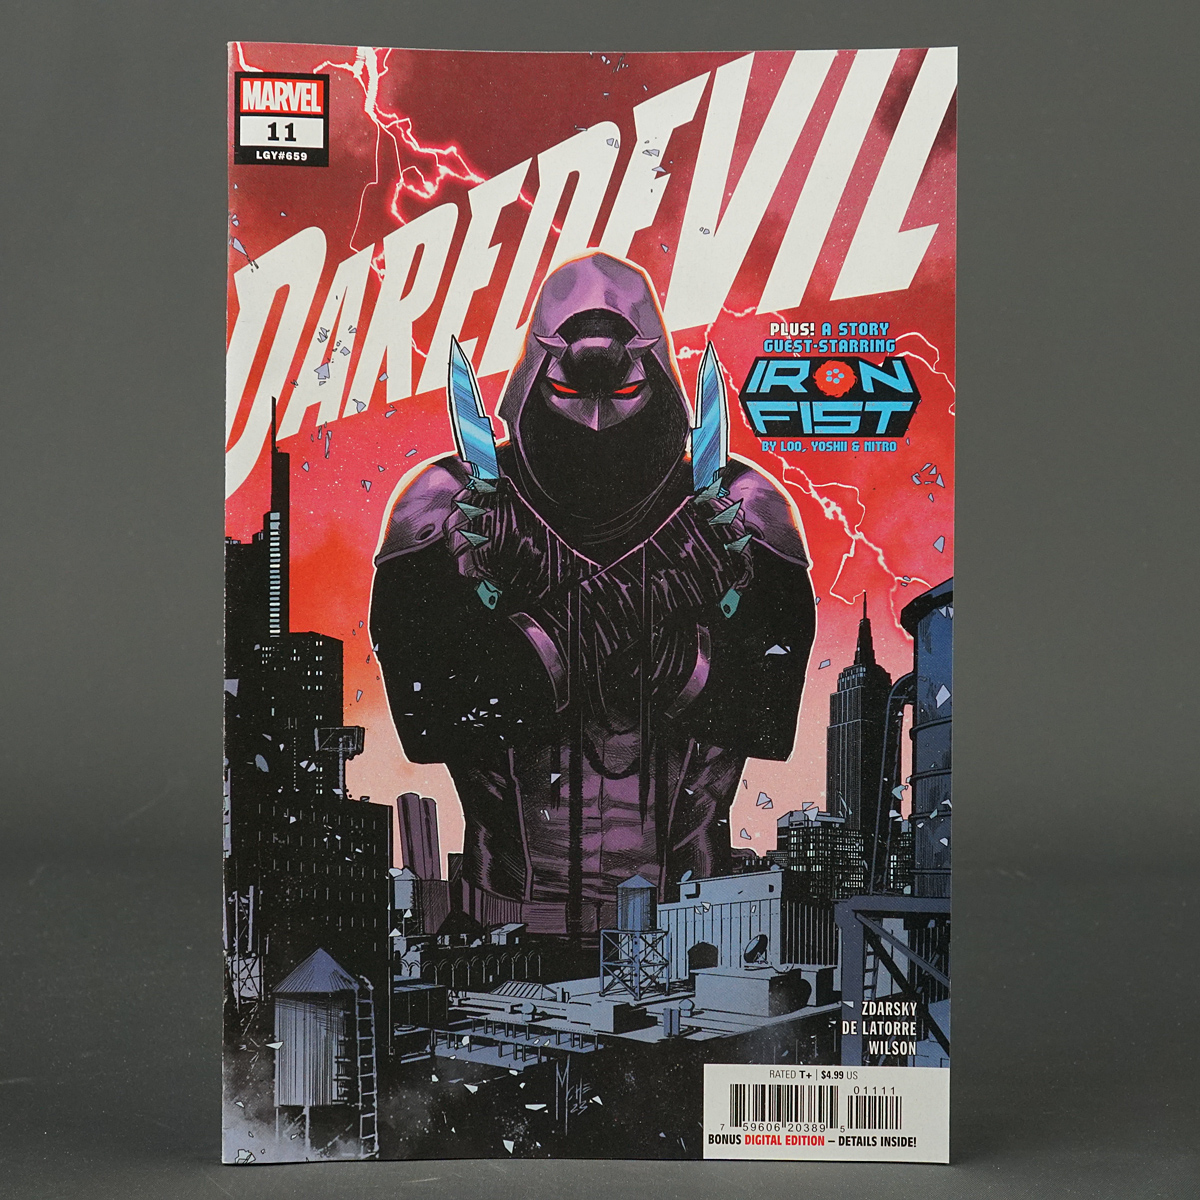 DAREDEVIL #11 Marvel Comics MAR230884 (W) Zdarsky (CA) Checchetto (A) De Latorre